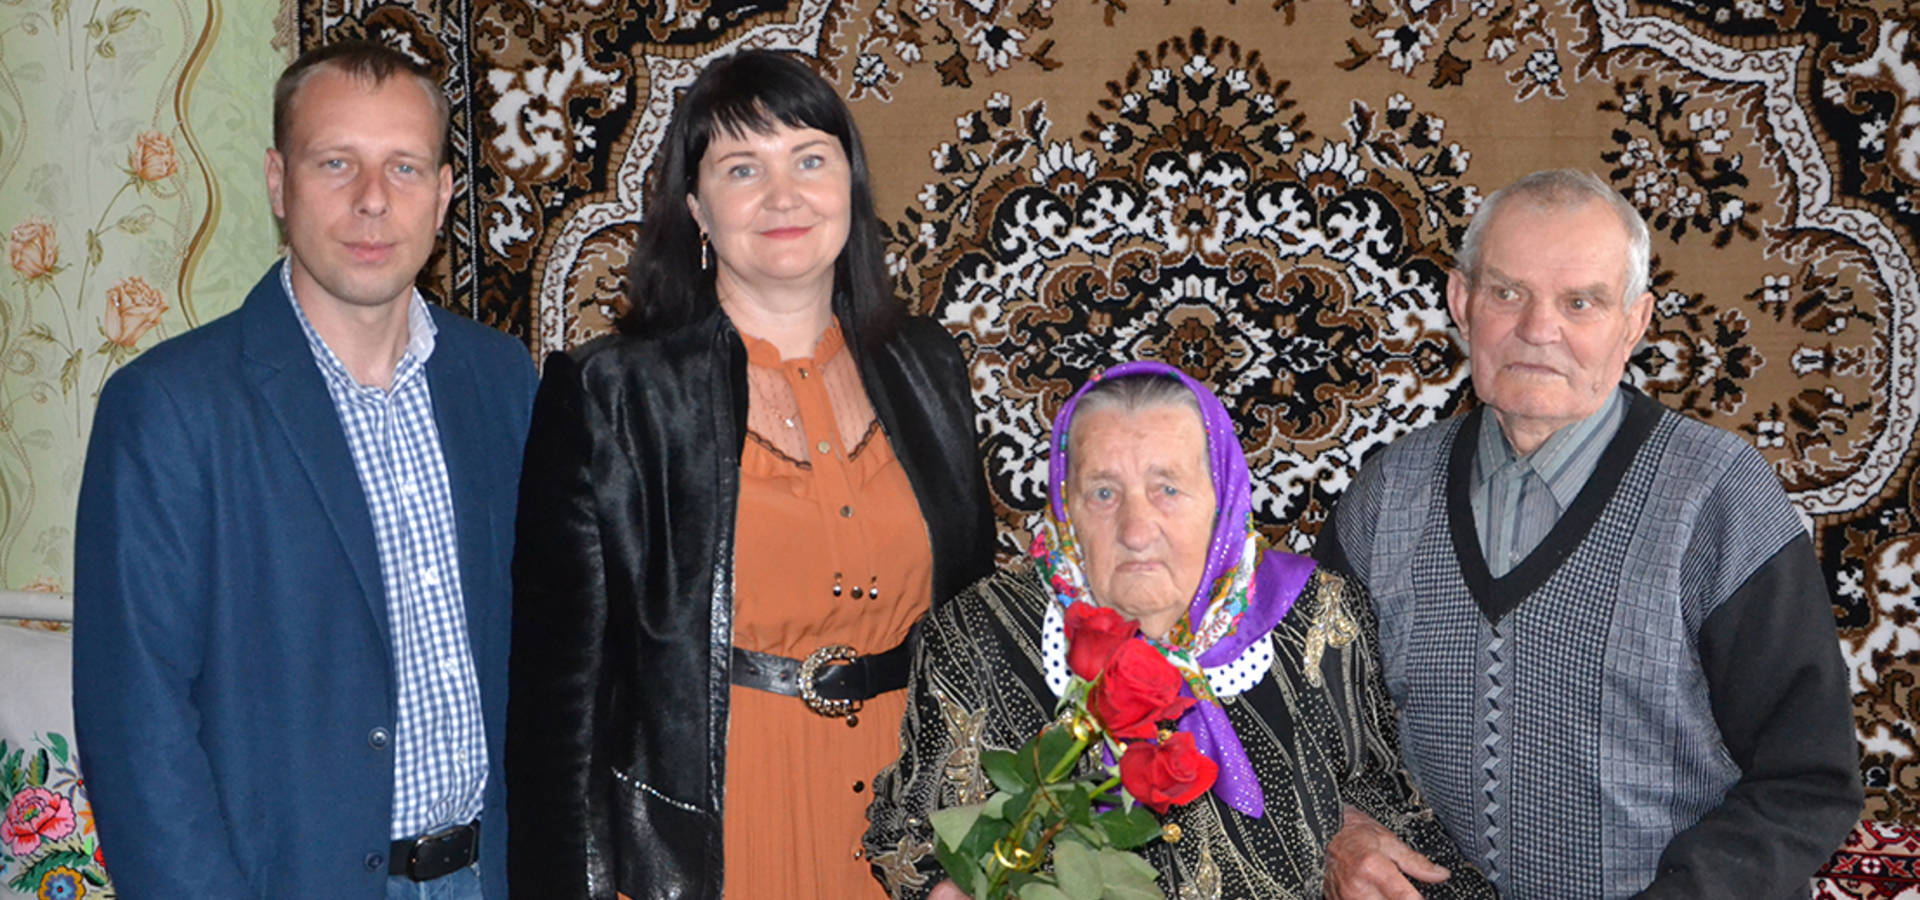 ПрАТ "Зернопродукт МХП" привітало подружжя, яке прожило в парі 70 років, з днем сім'ї